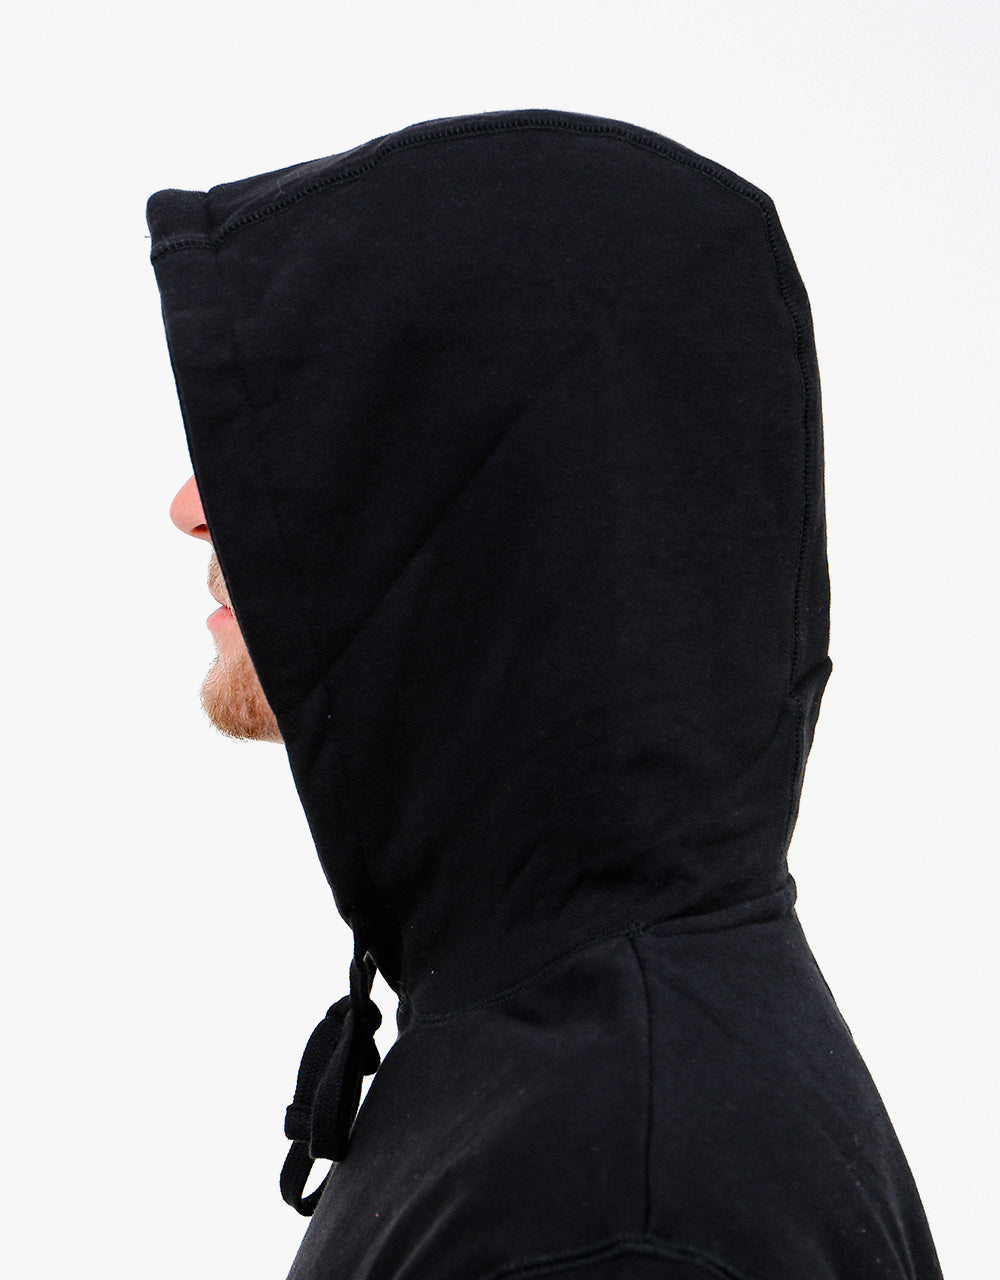 Piilgrim Upside Pullover Hoodie - Black